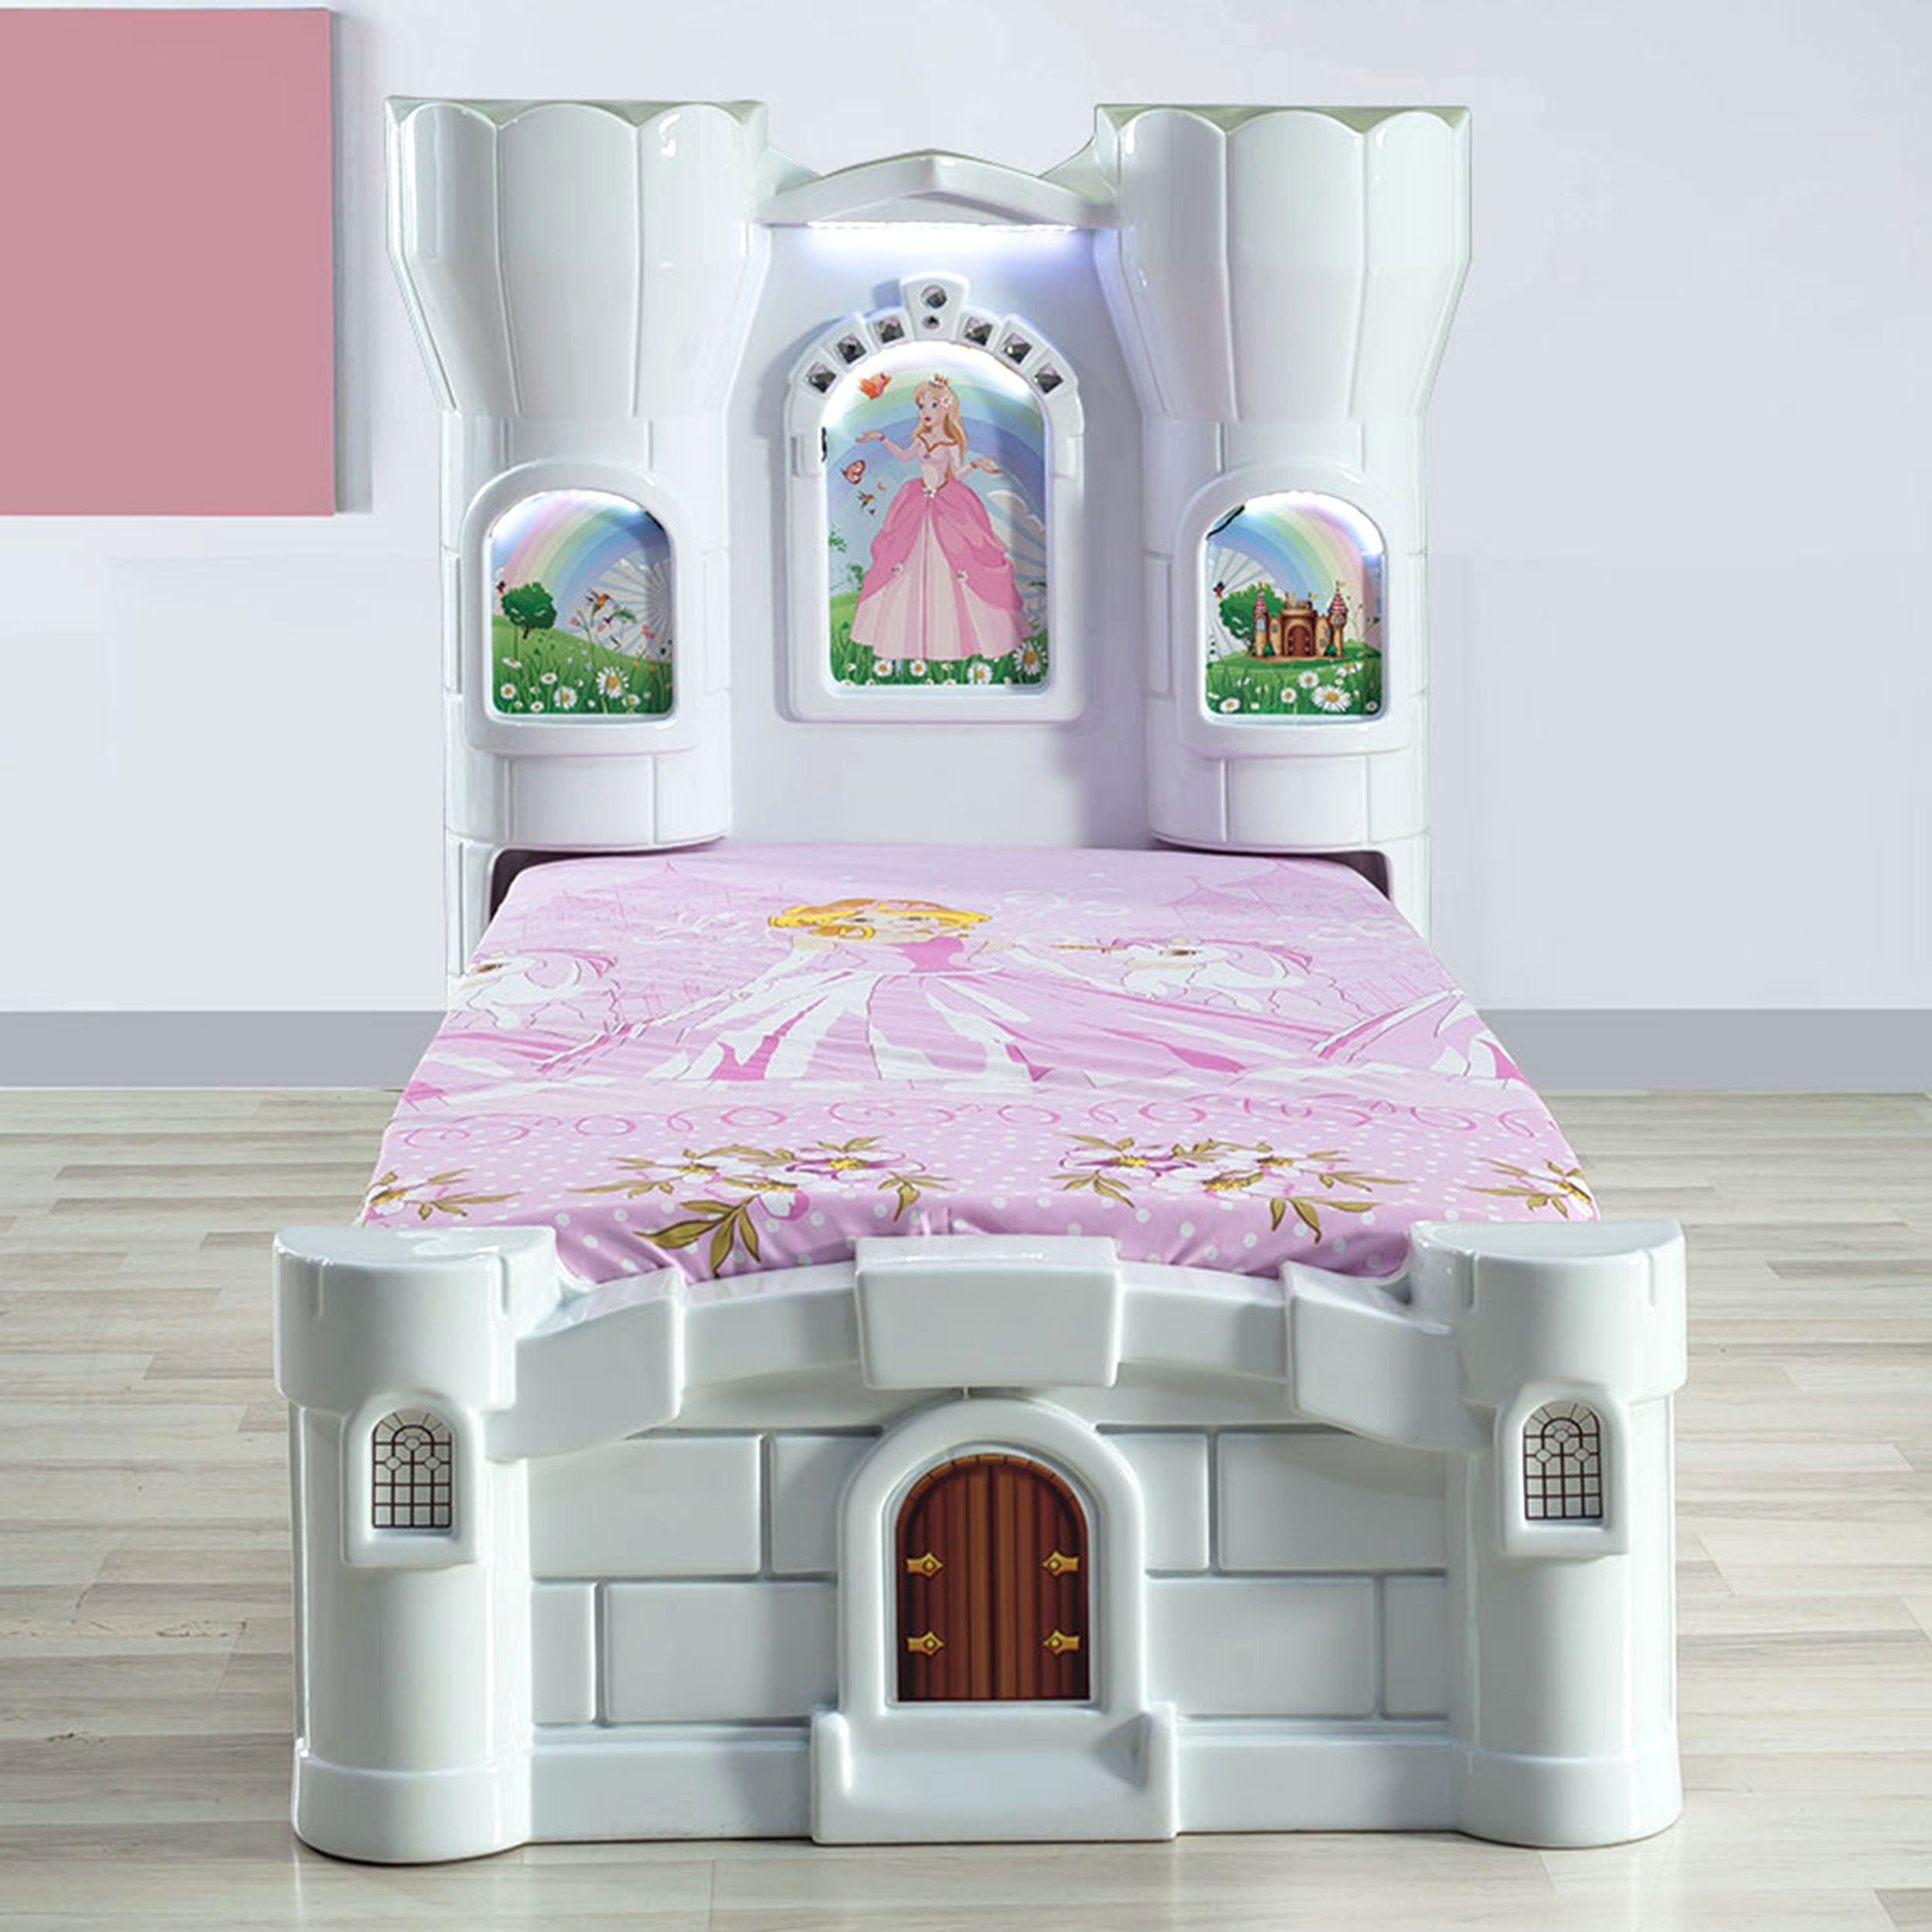 Pretty Princess Castle Bed